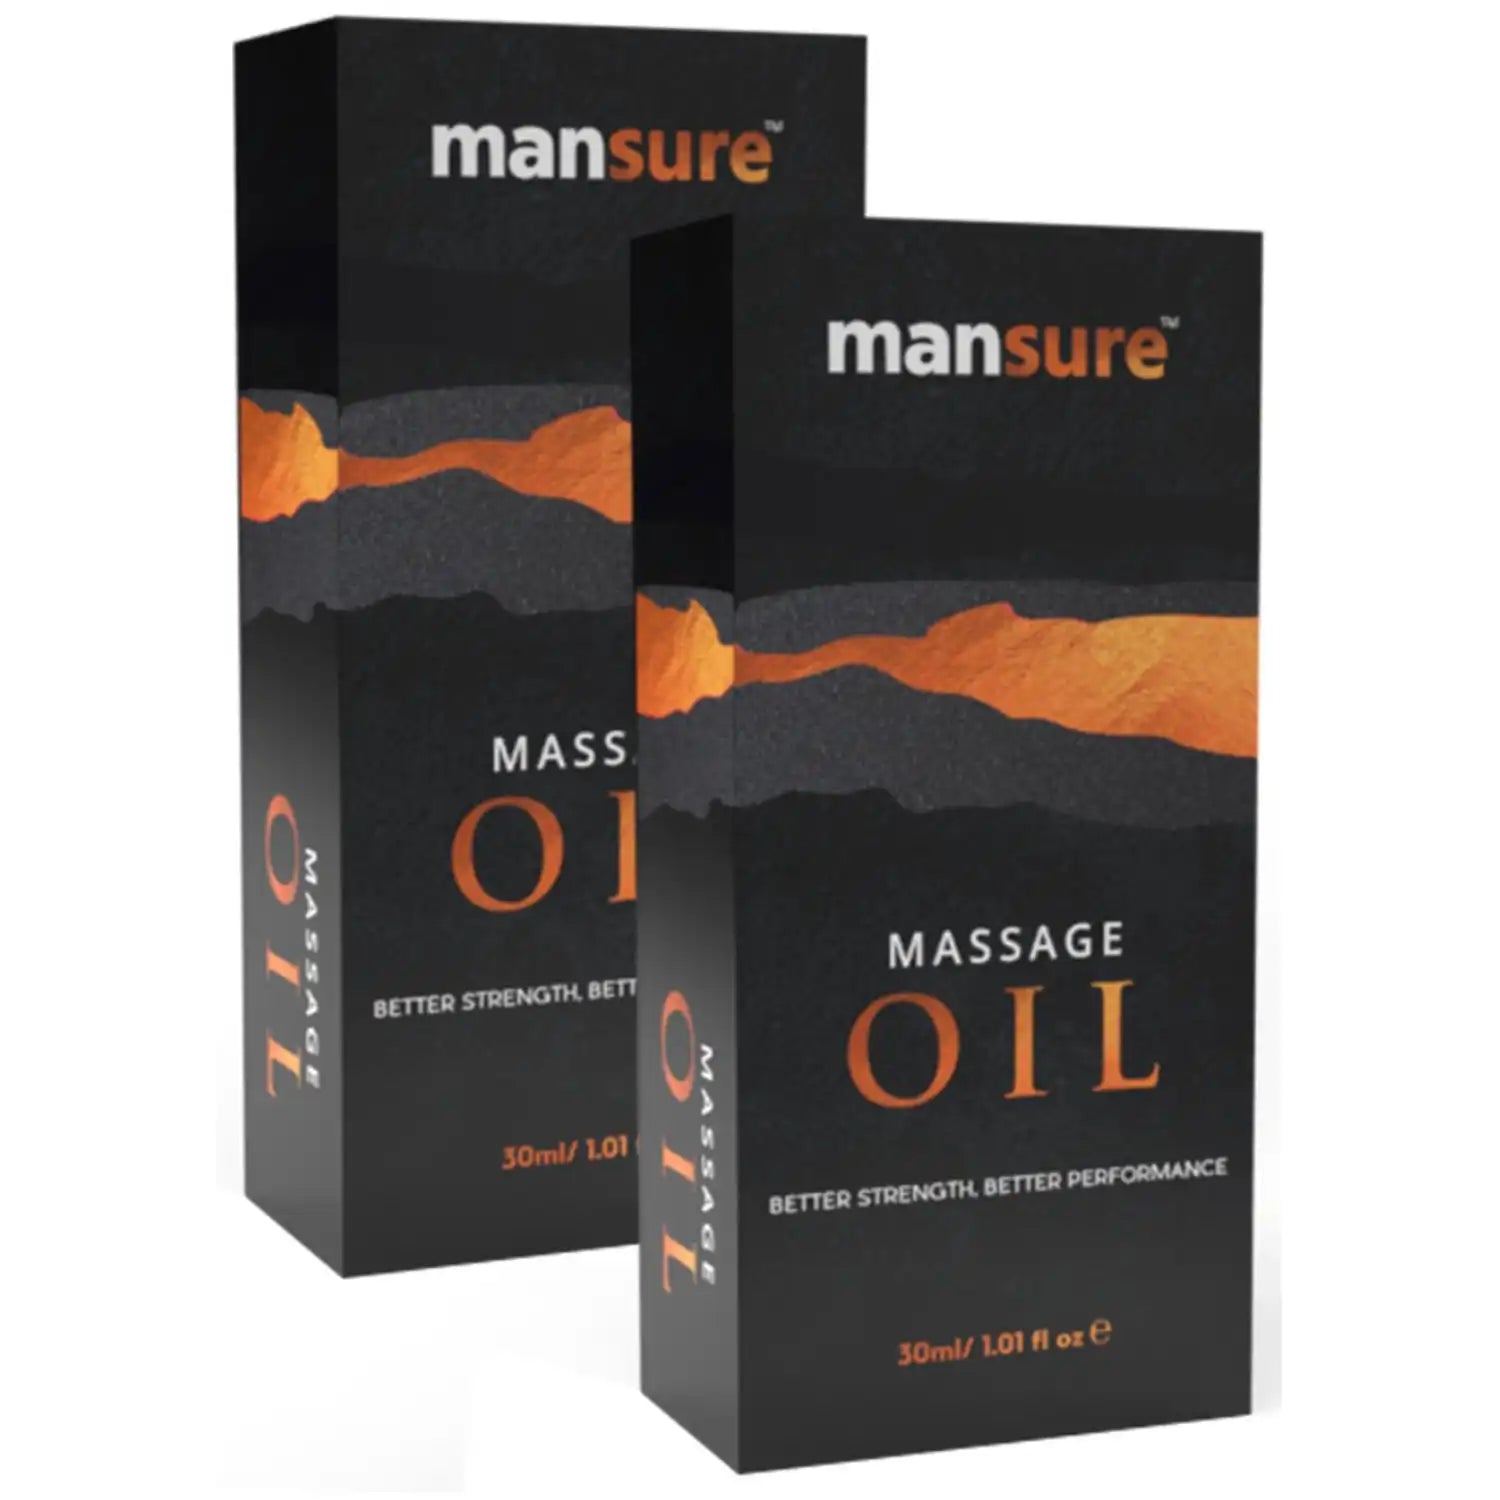 Buy 2 Packs ManSure Massage Oil For Men From Official Brand Store - everteen-neud.com